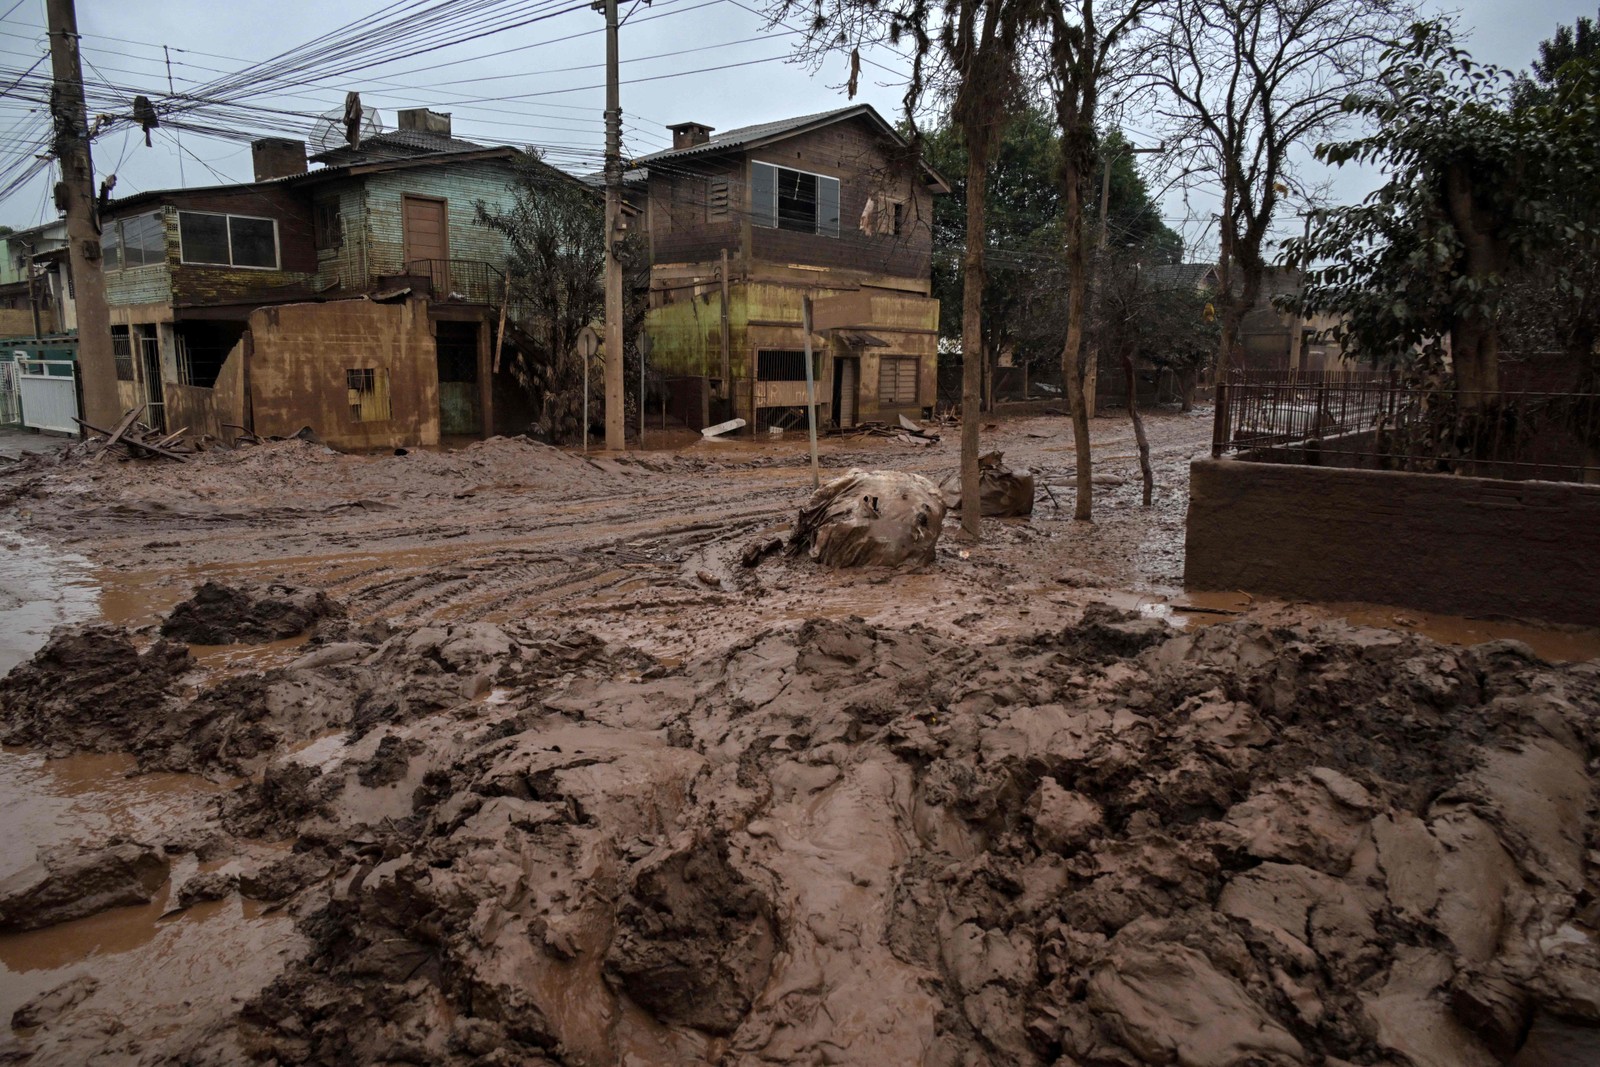 Vista do bairro de São José coberto de lama após as enchentes devastadoras, em Lajeado, Rio Grande do Sul — Foto: Nelson ALMEIDA / AFP